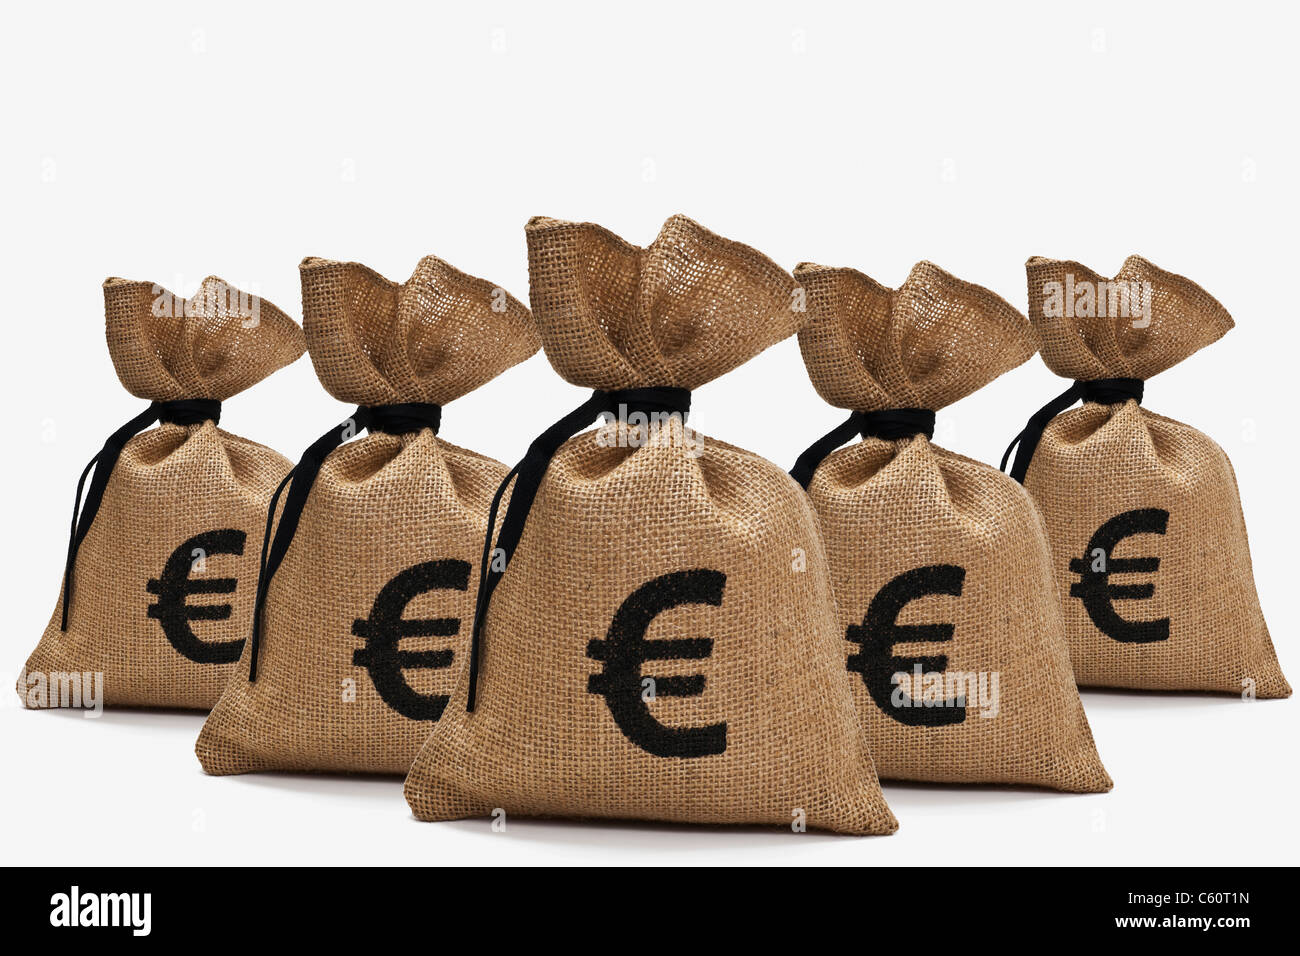 Fünf Geldsäcke Mit Euro-Aussteuerungsanzeige Stehen Hintereinander | fünf Geldtaschen mit Euro-Zeichen Rücken an Rücken Stockfoto